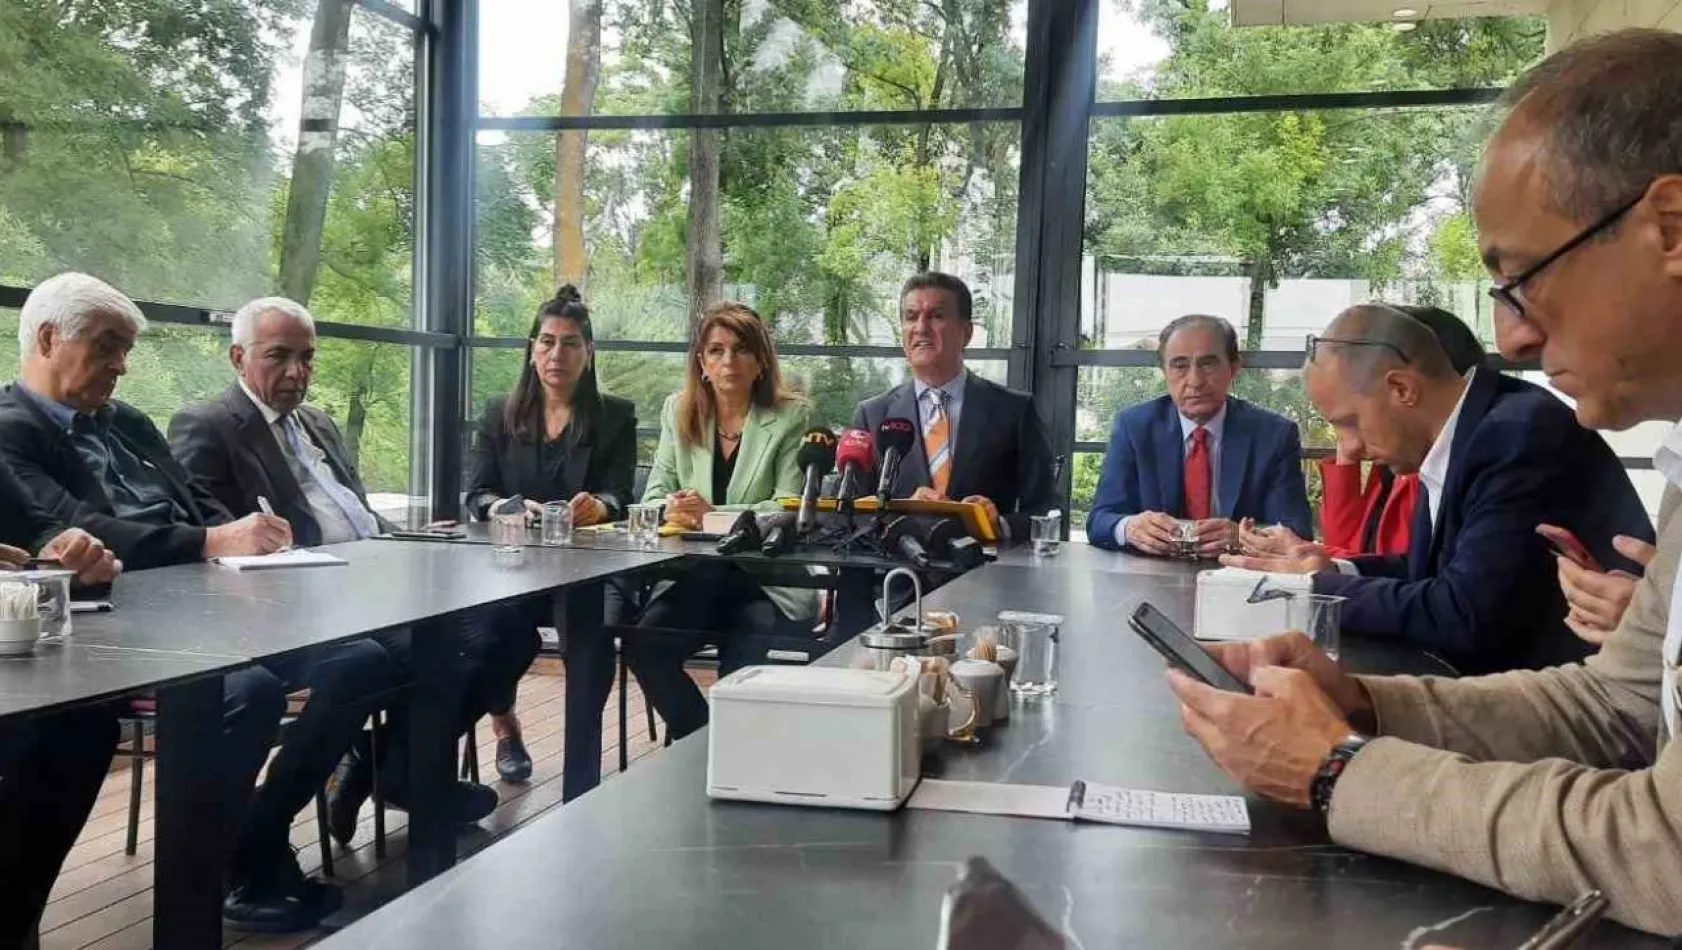 CHP Erzincan Milletvekili Sarıgül: 'Herkesin şu ortamda Kemal Kılıçdaroğlu'na destek vermesi önemlidir'